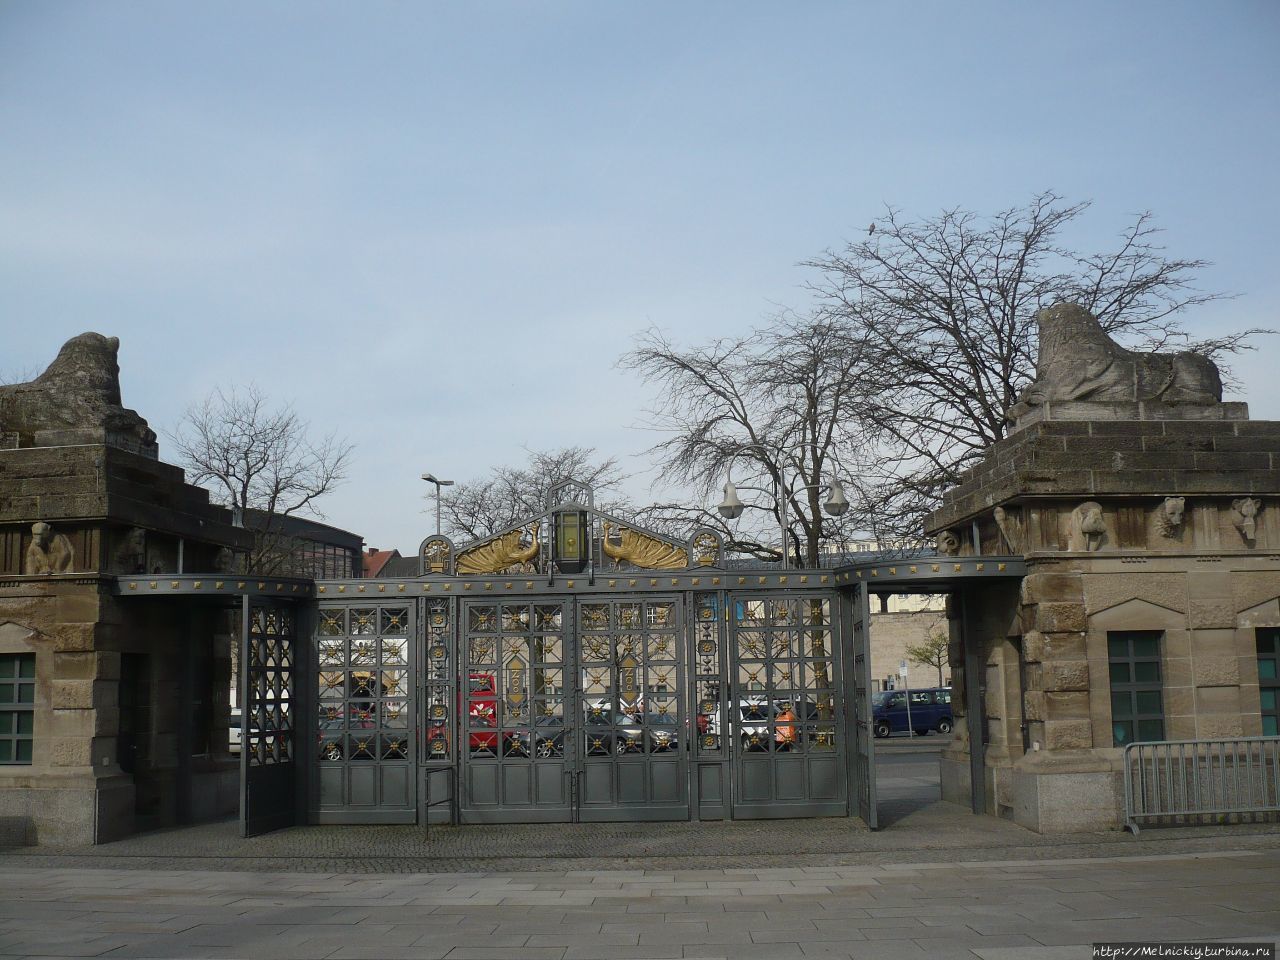 Берлинский зоопарк Берлин, Германия